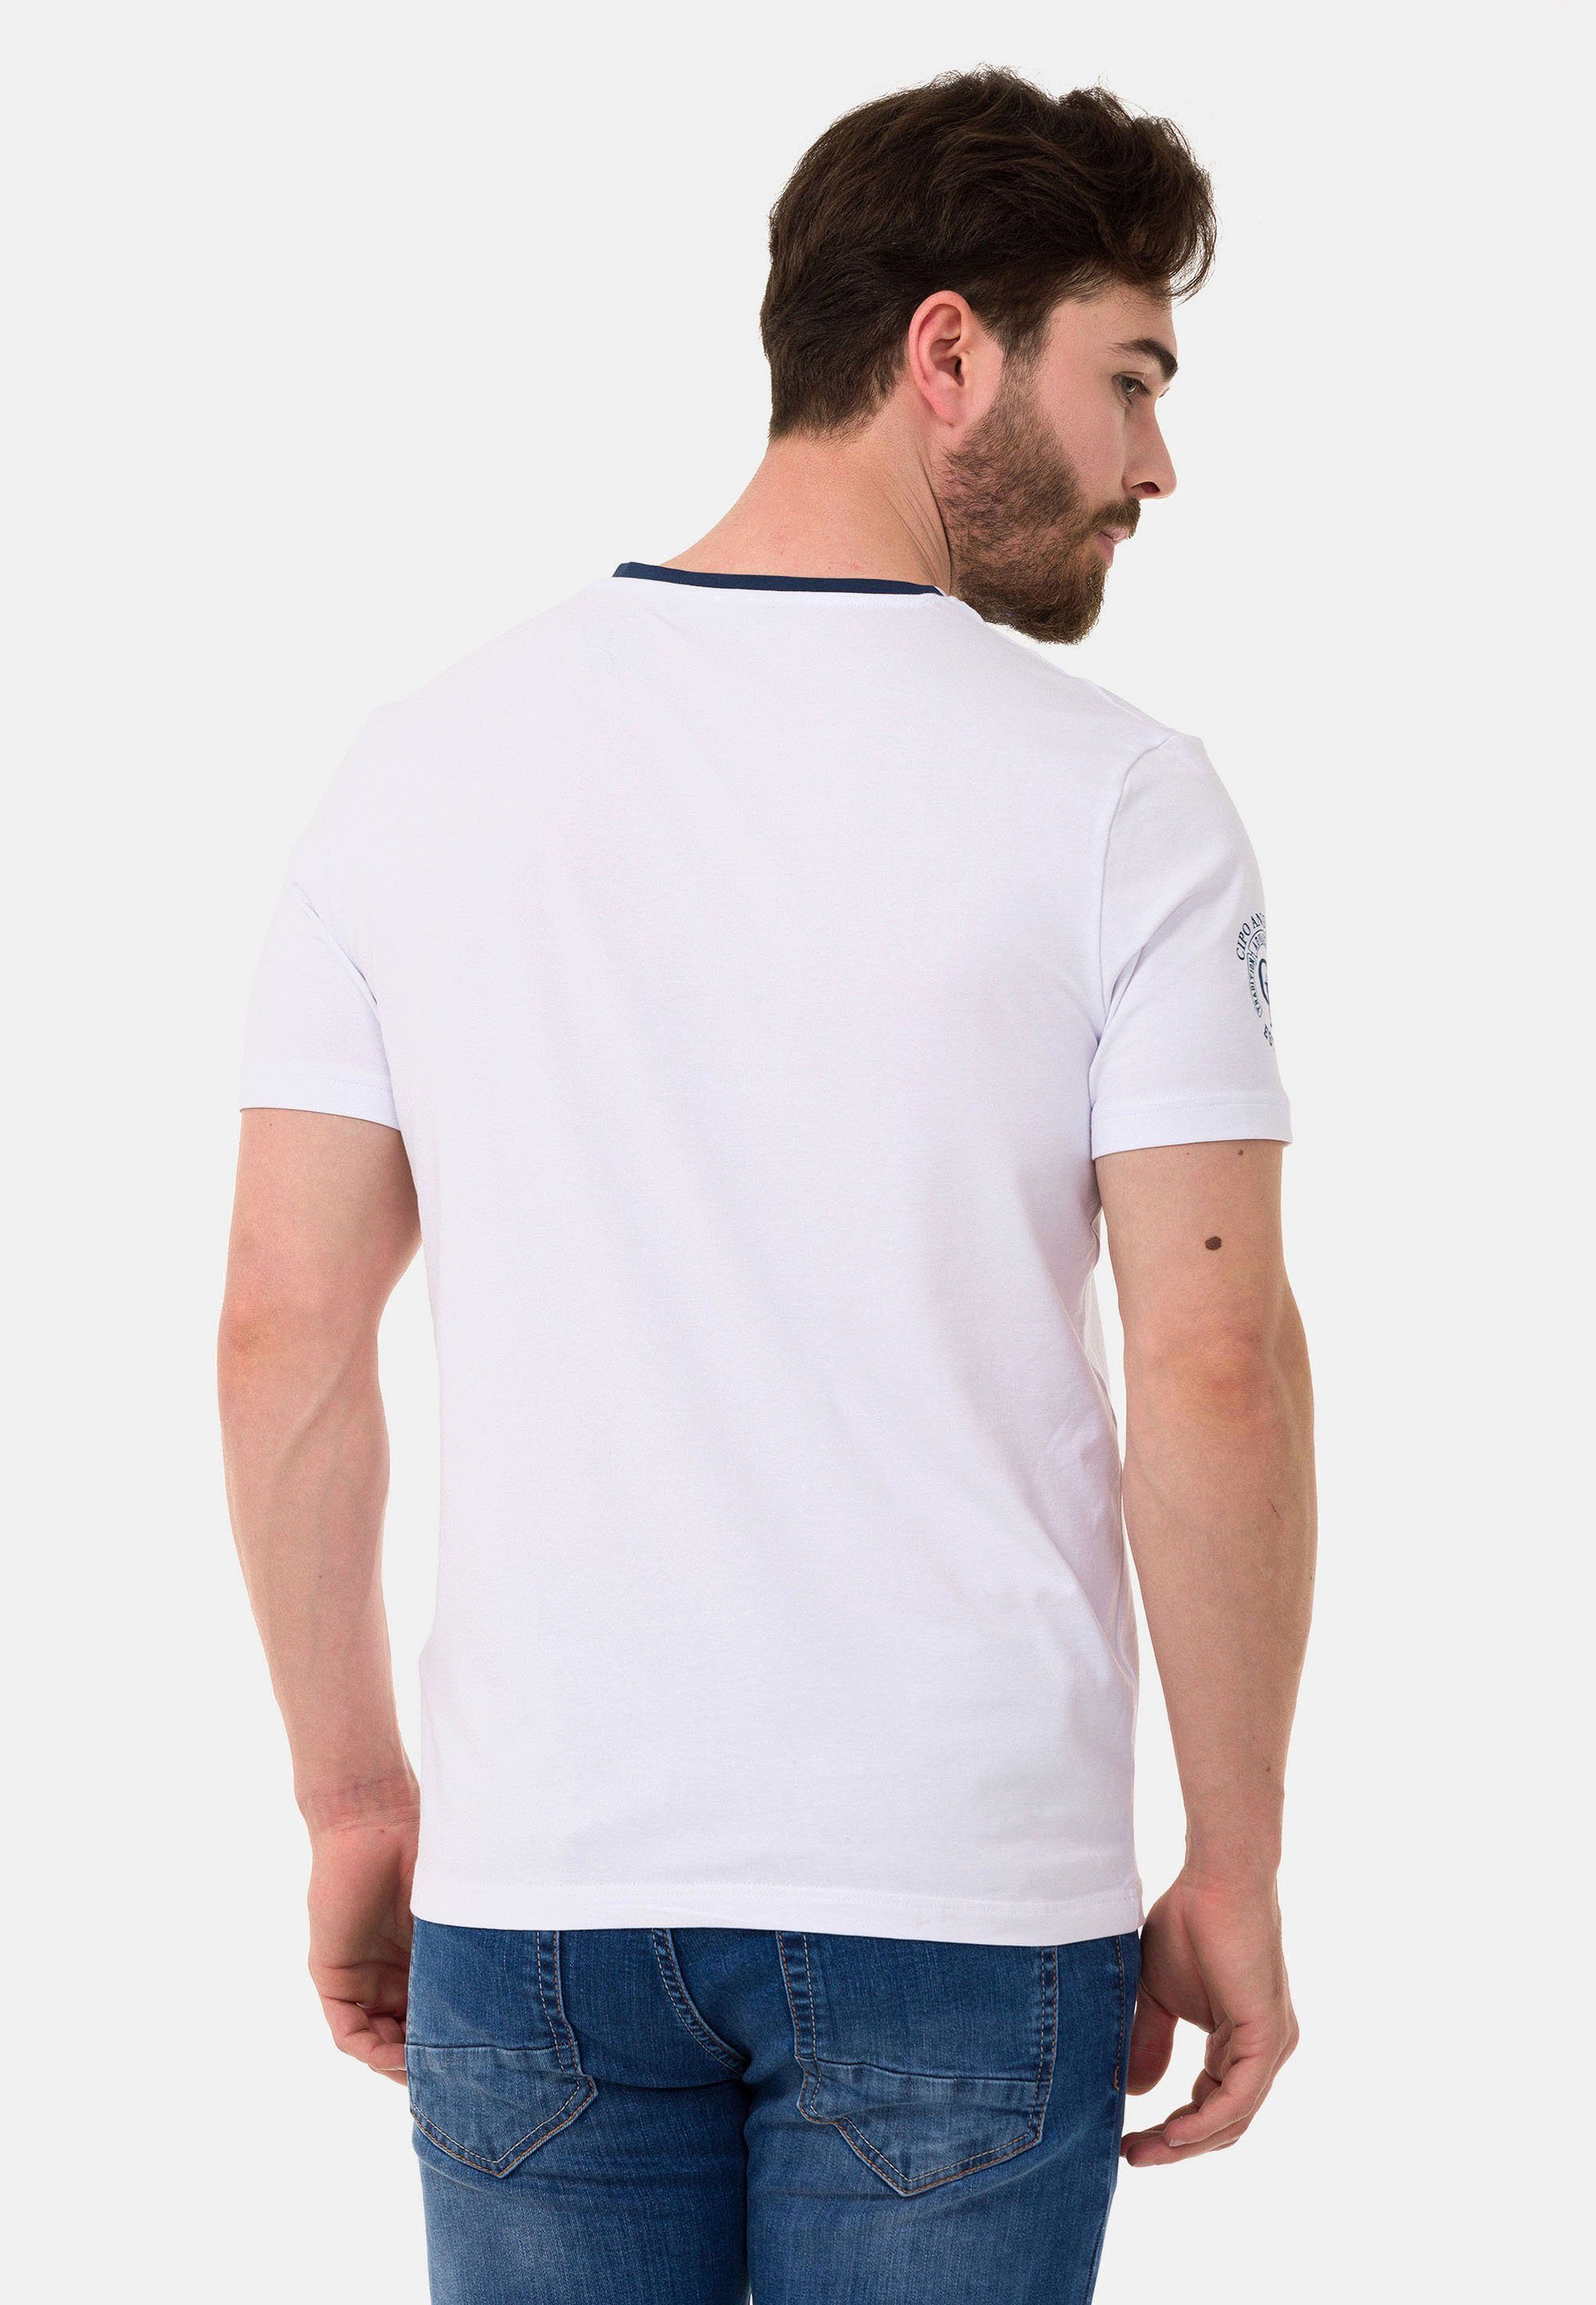 Cipo & Baxx T-Shirt mit weiß Markenlogos dezenten